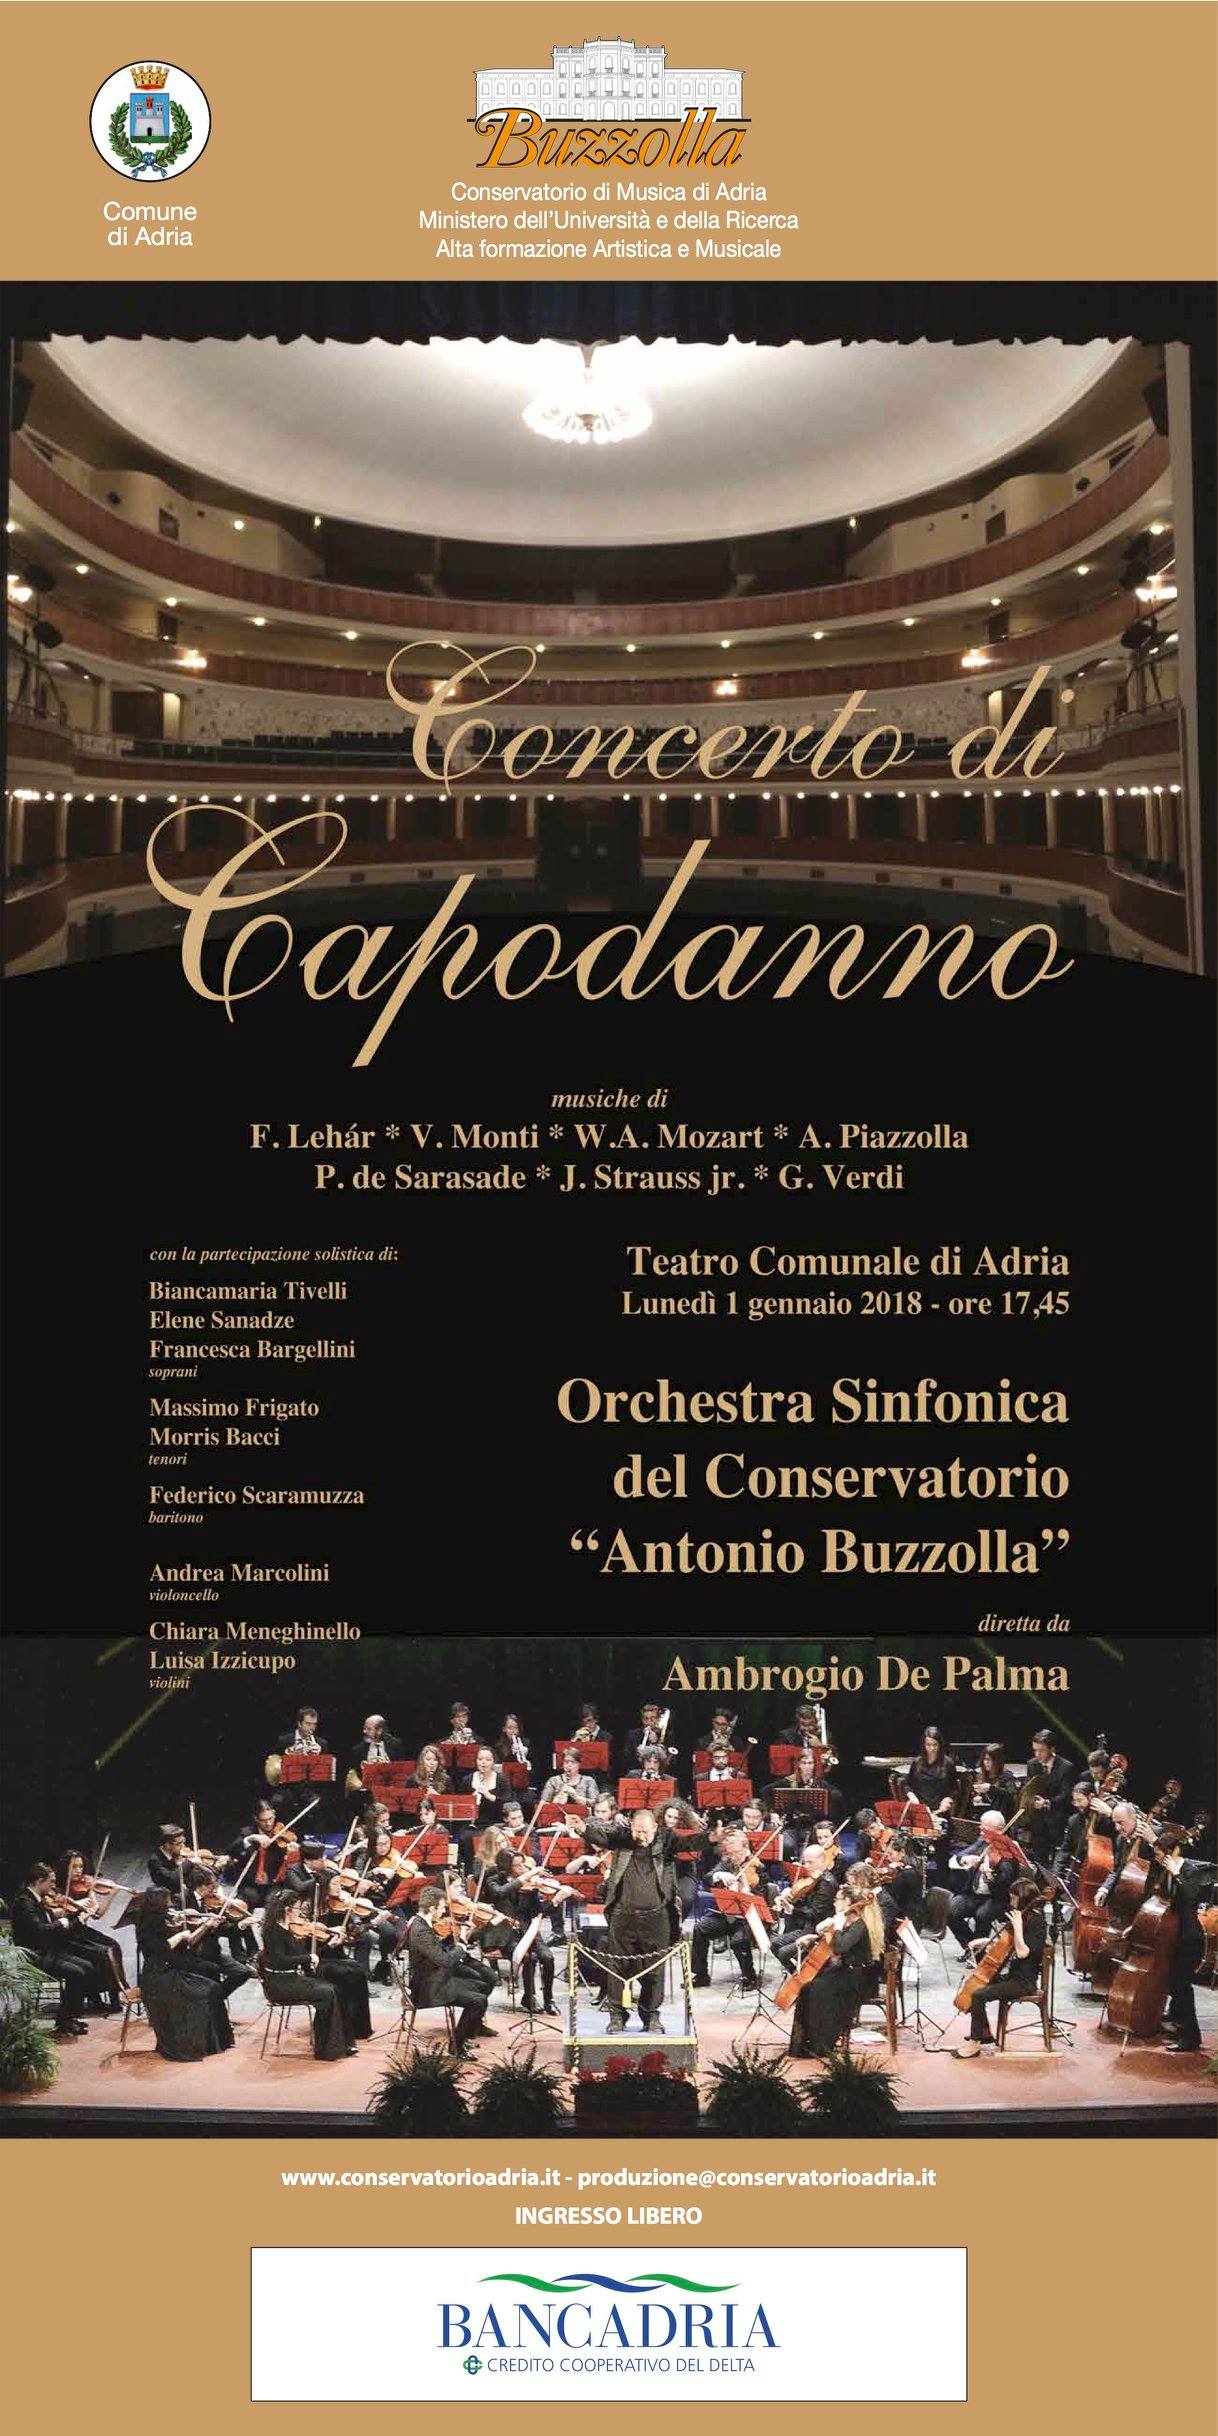 Concerto di Capodanno, 1 Gennaio 2018 ore 17.45